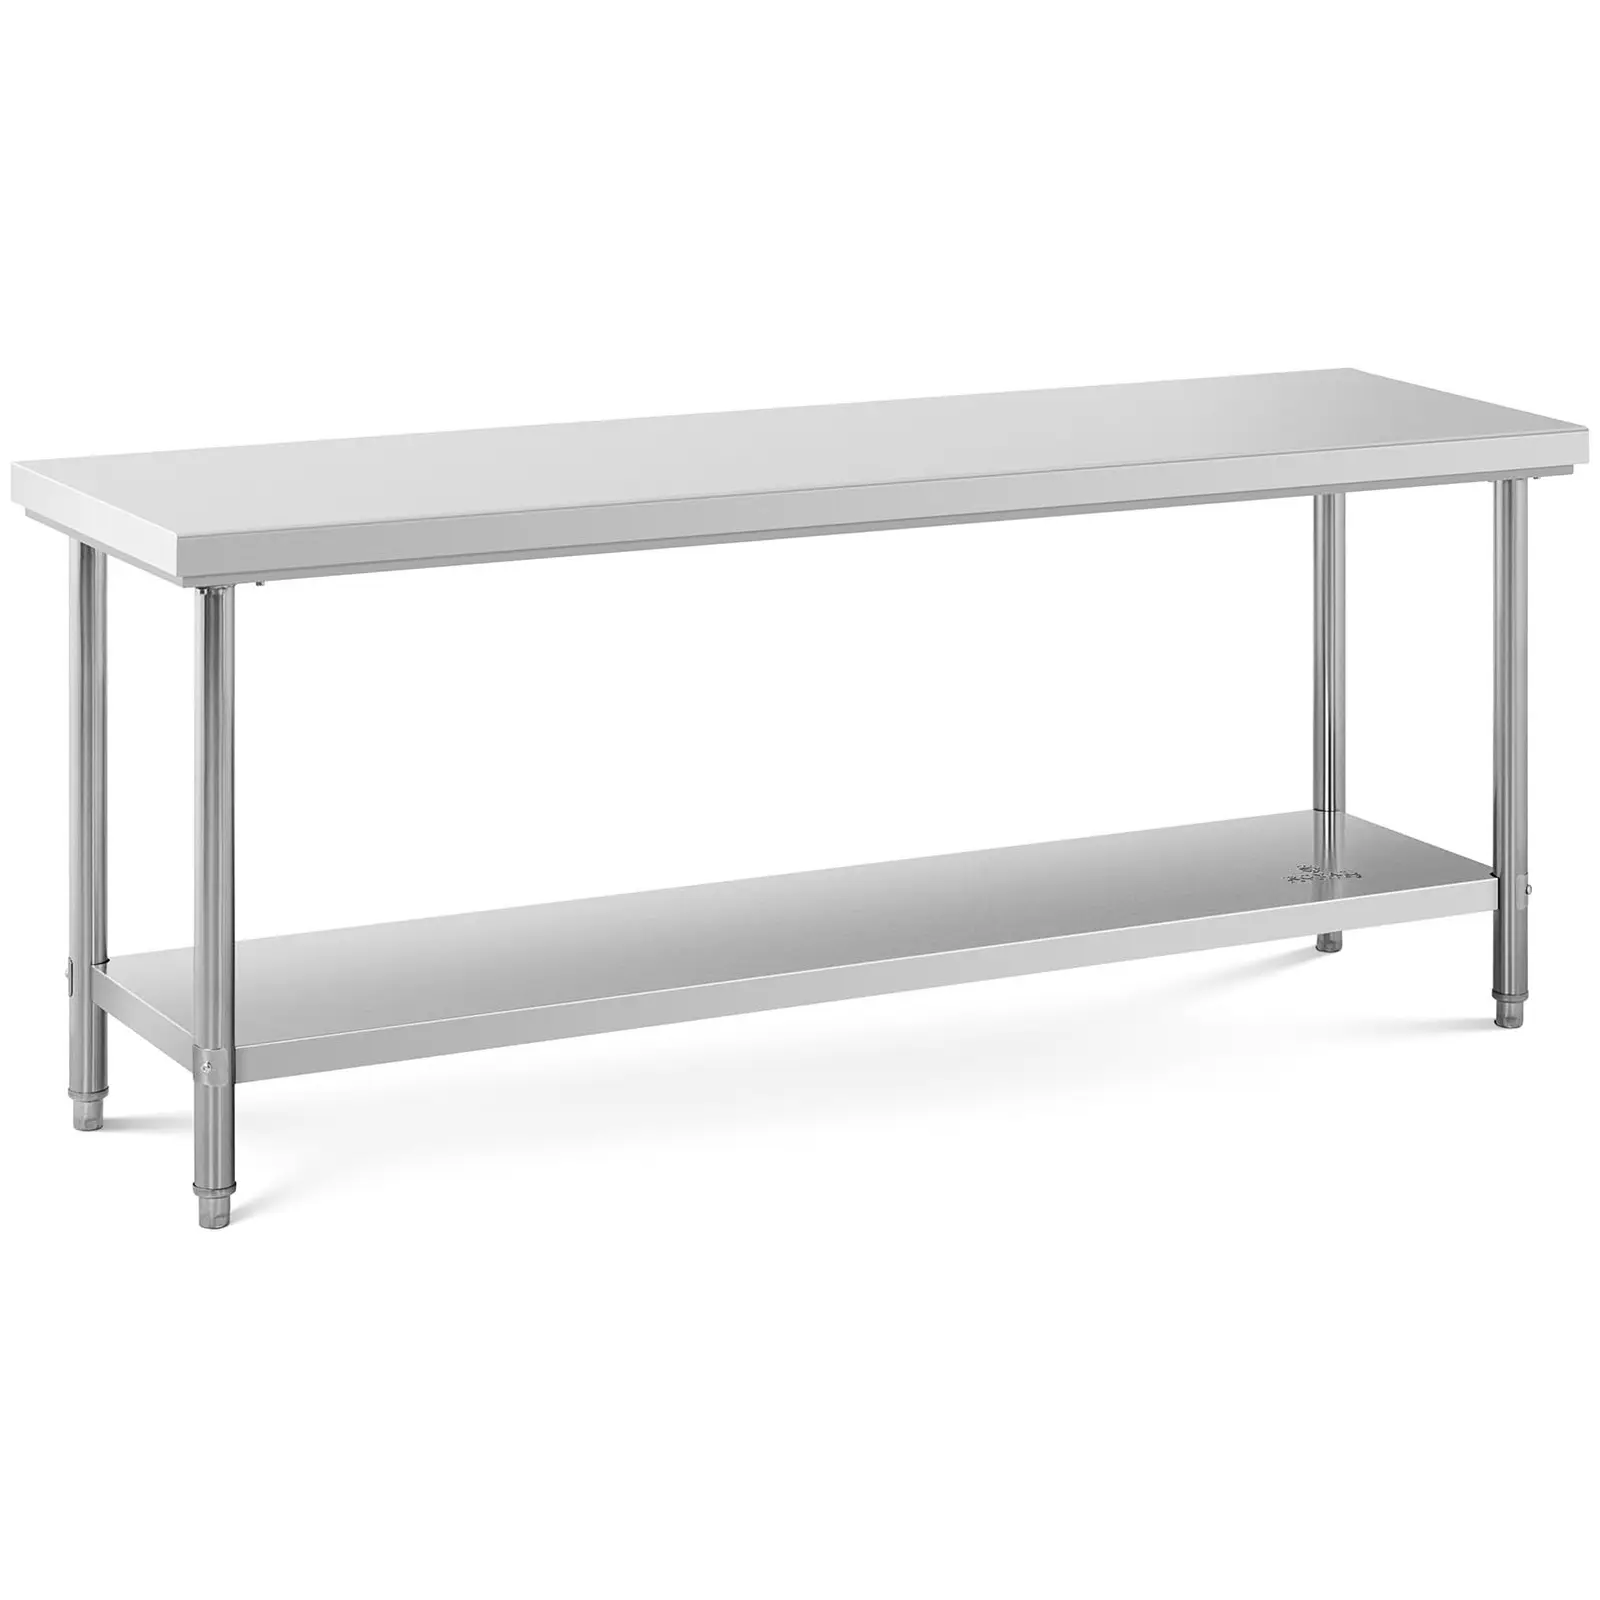 Pracovný stôl z nehrdzavejúcej ocele - 200 x 60 cm - nosnosť 240 kg